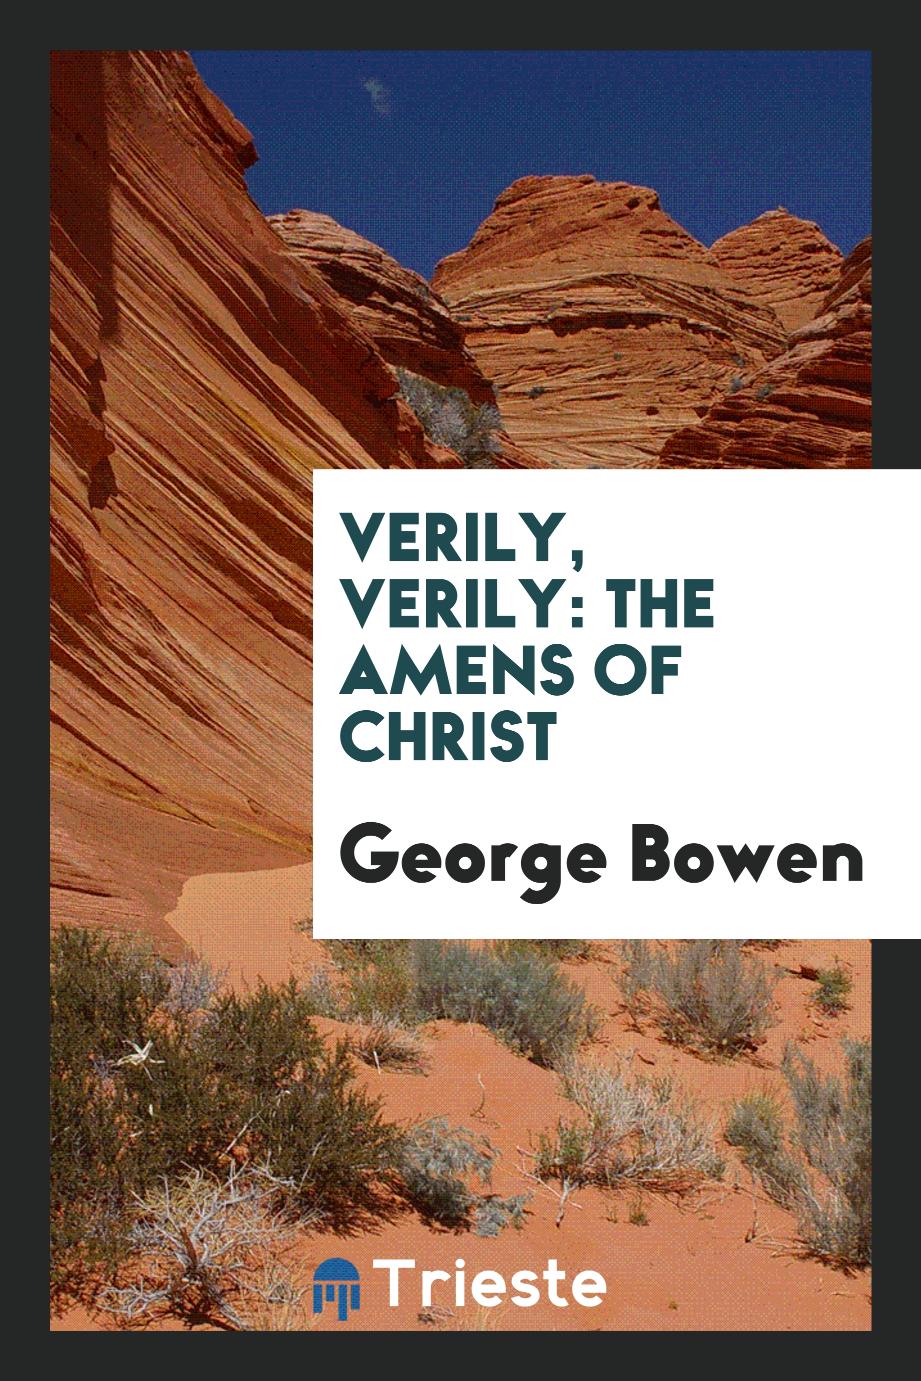 Verily, verily: the amens of Christ